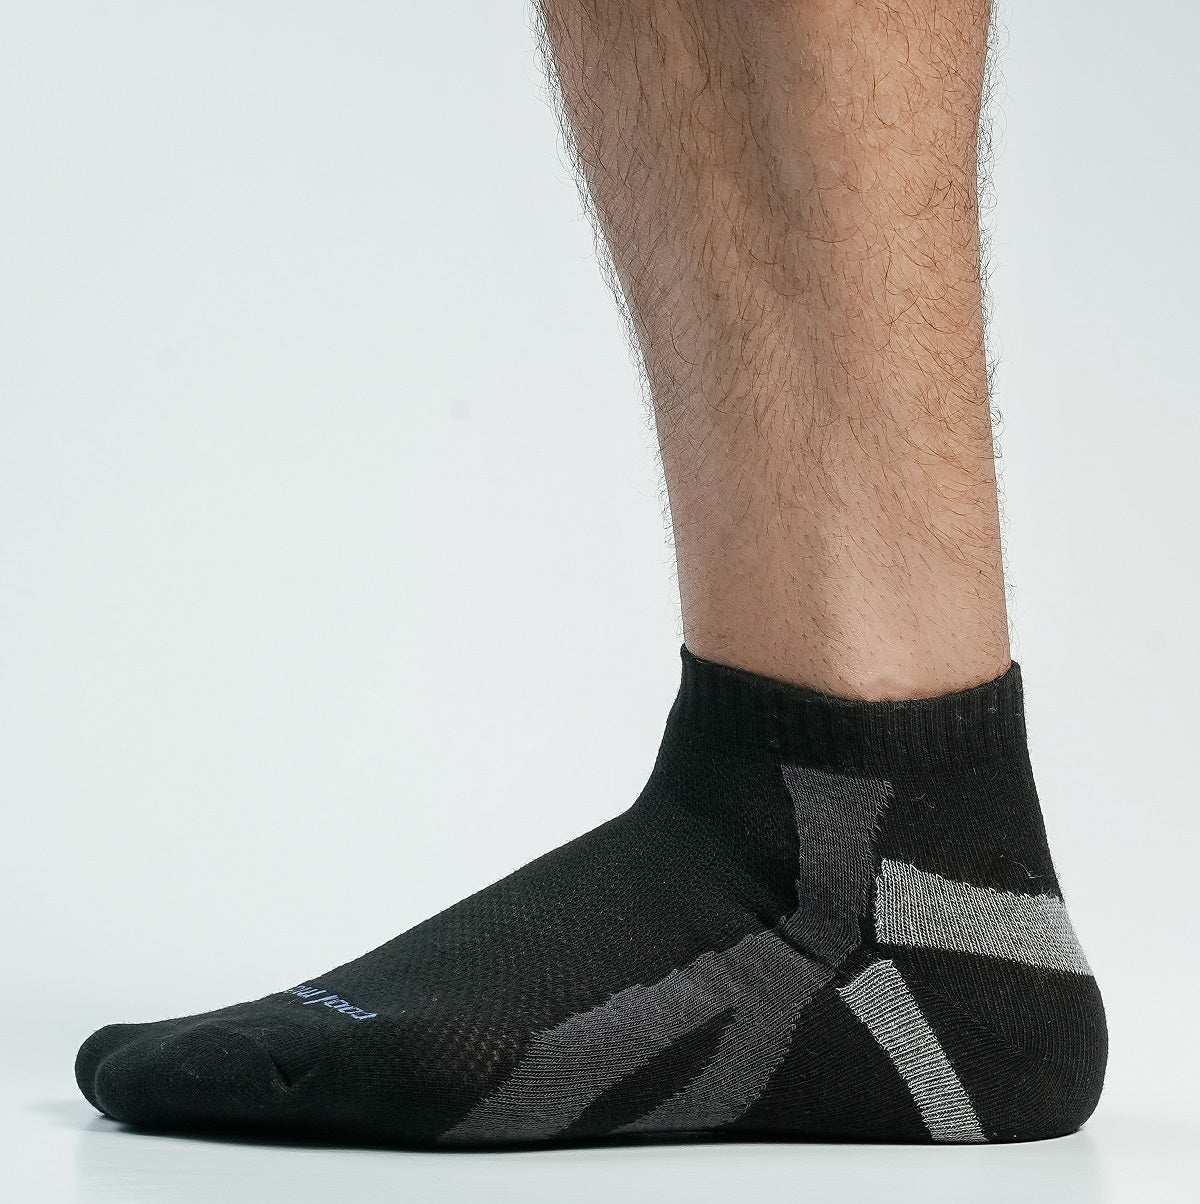 Blank Star Ankle Socks For Men – socksbangladesh